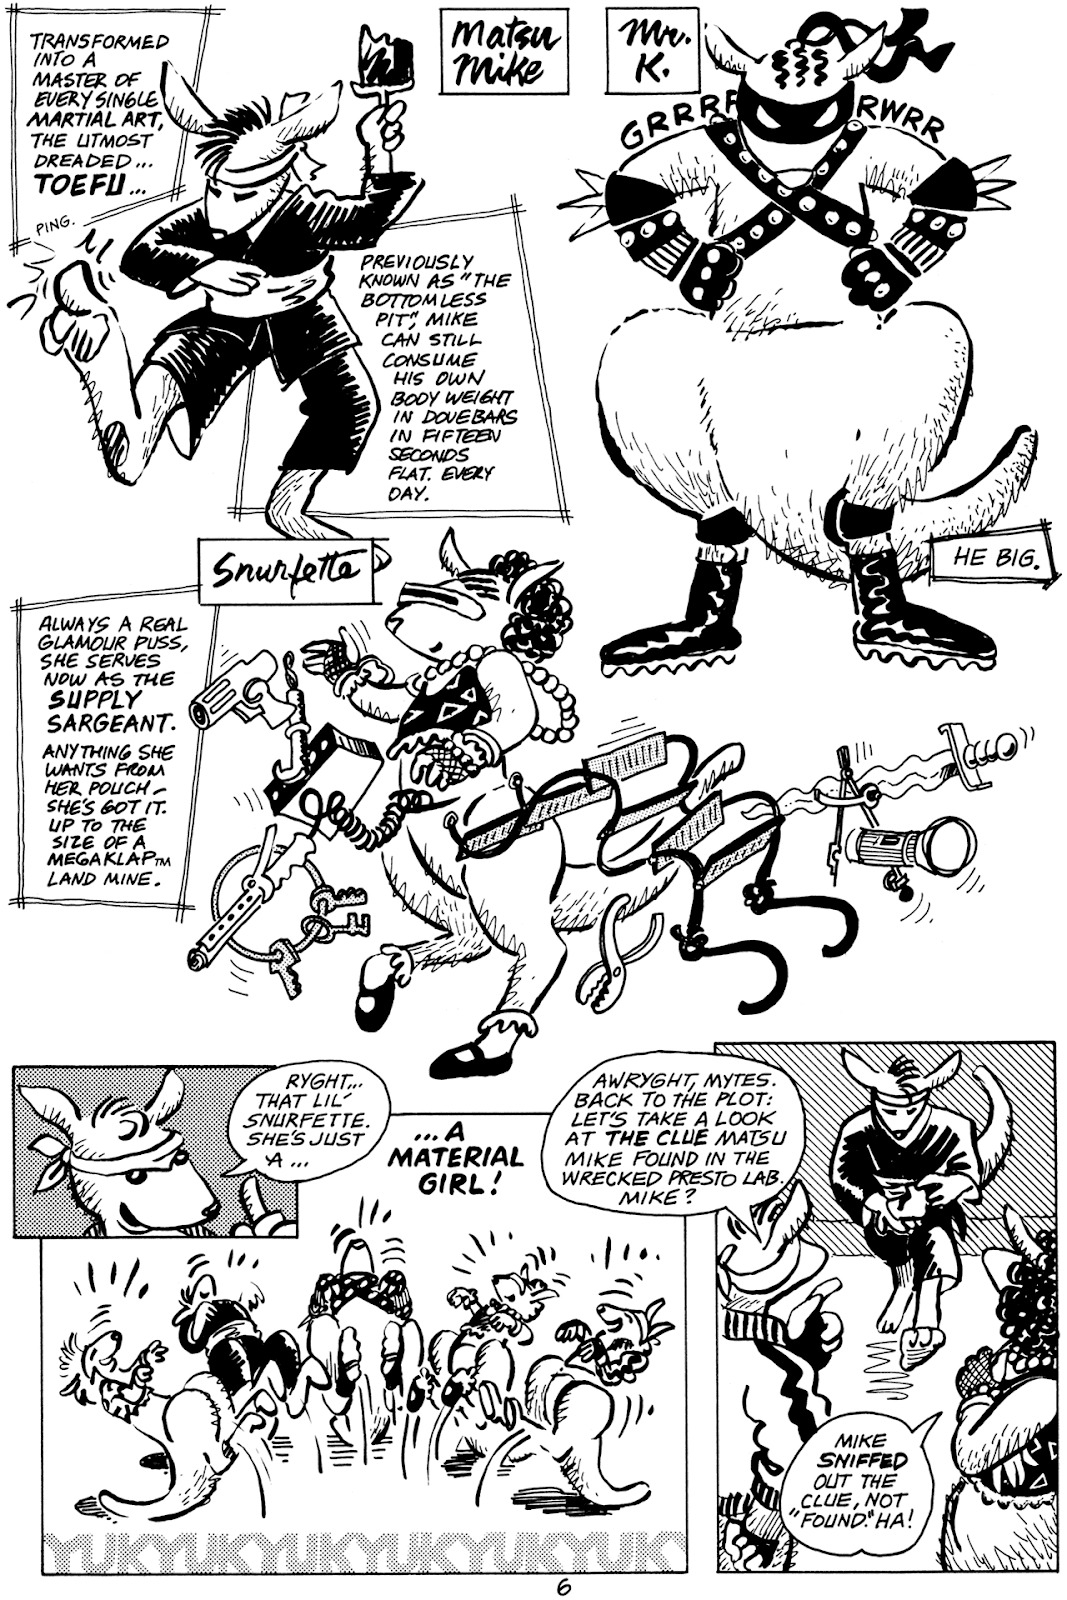 Pre-Teen Dirty-Gene Kung-Fu Kangaroos issue 1 - Page 8